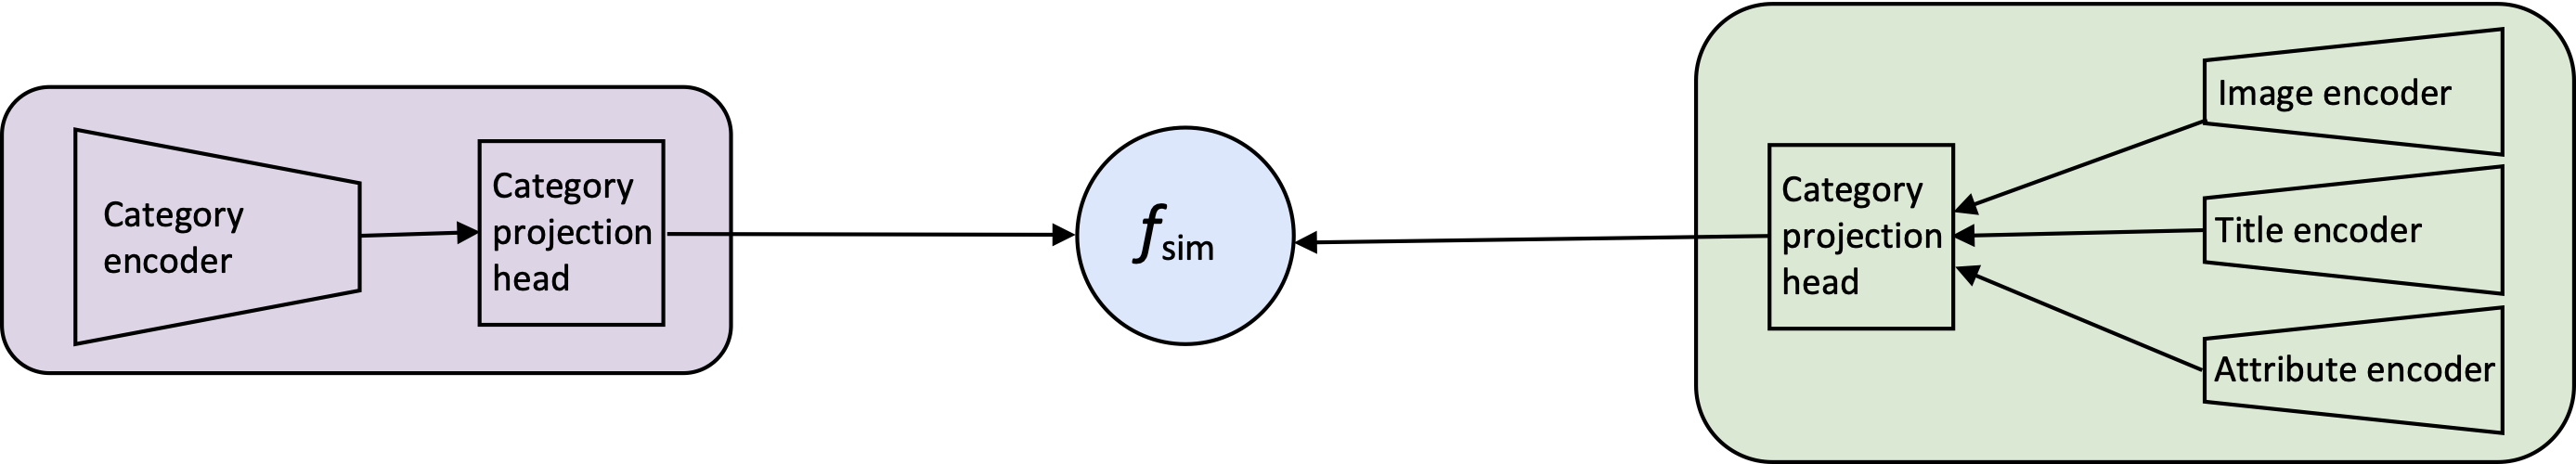 CLIP-ITA model configuration